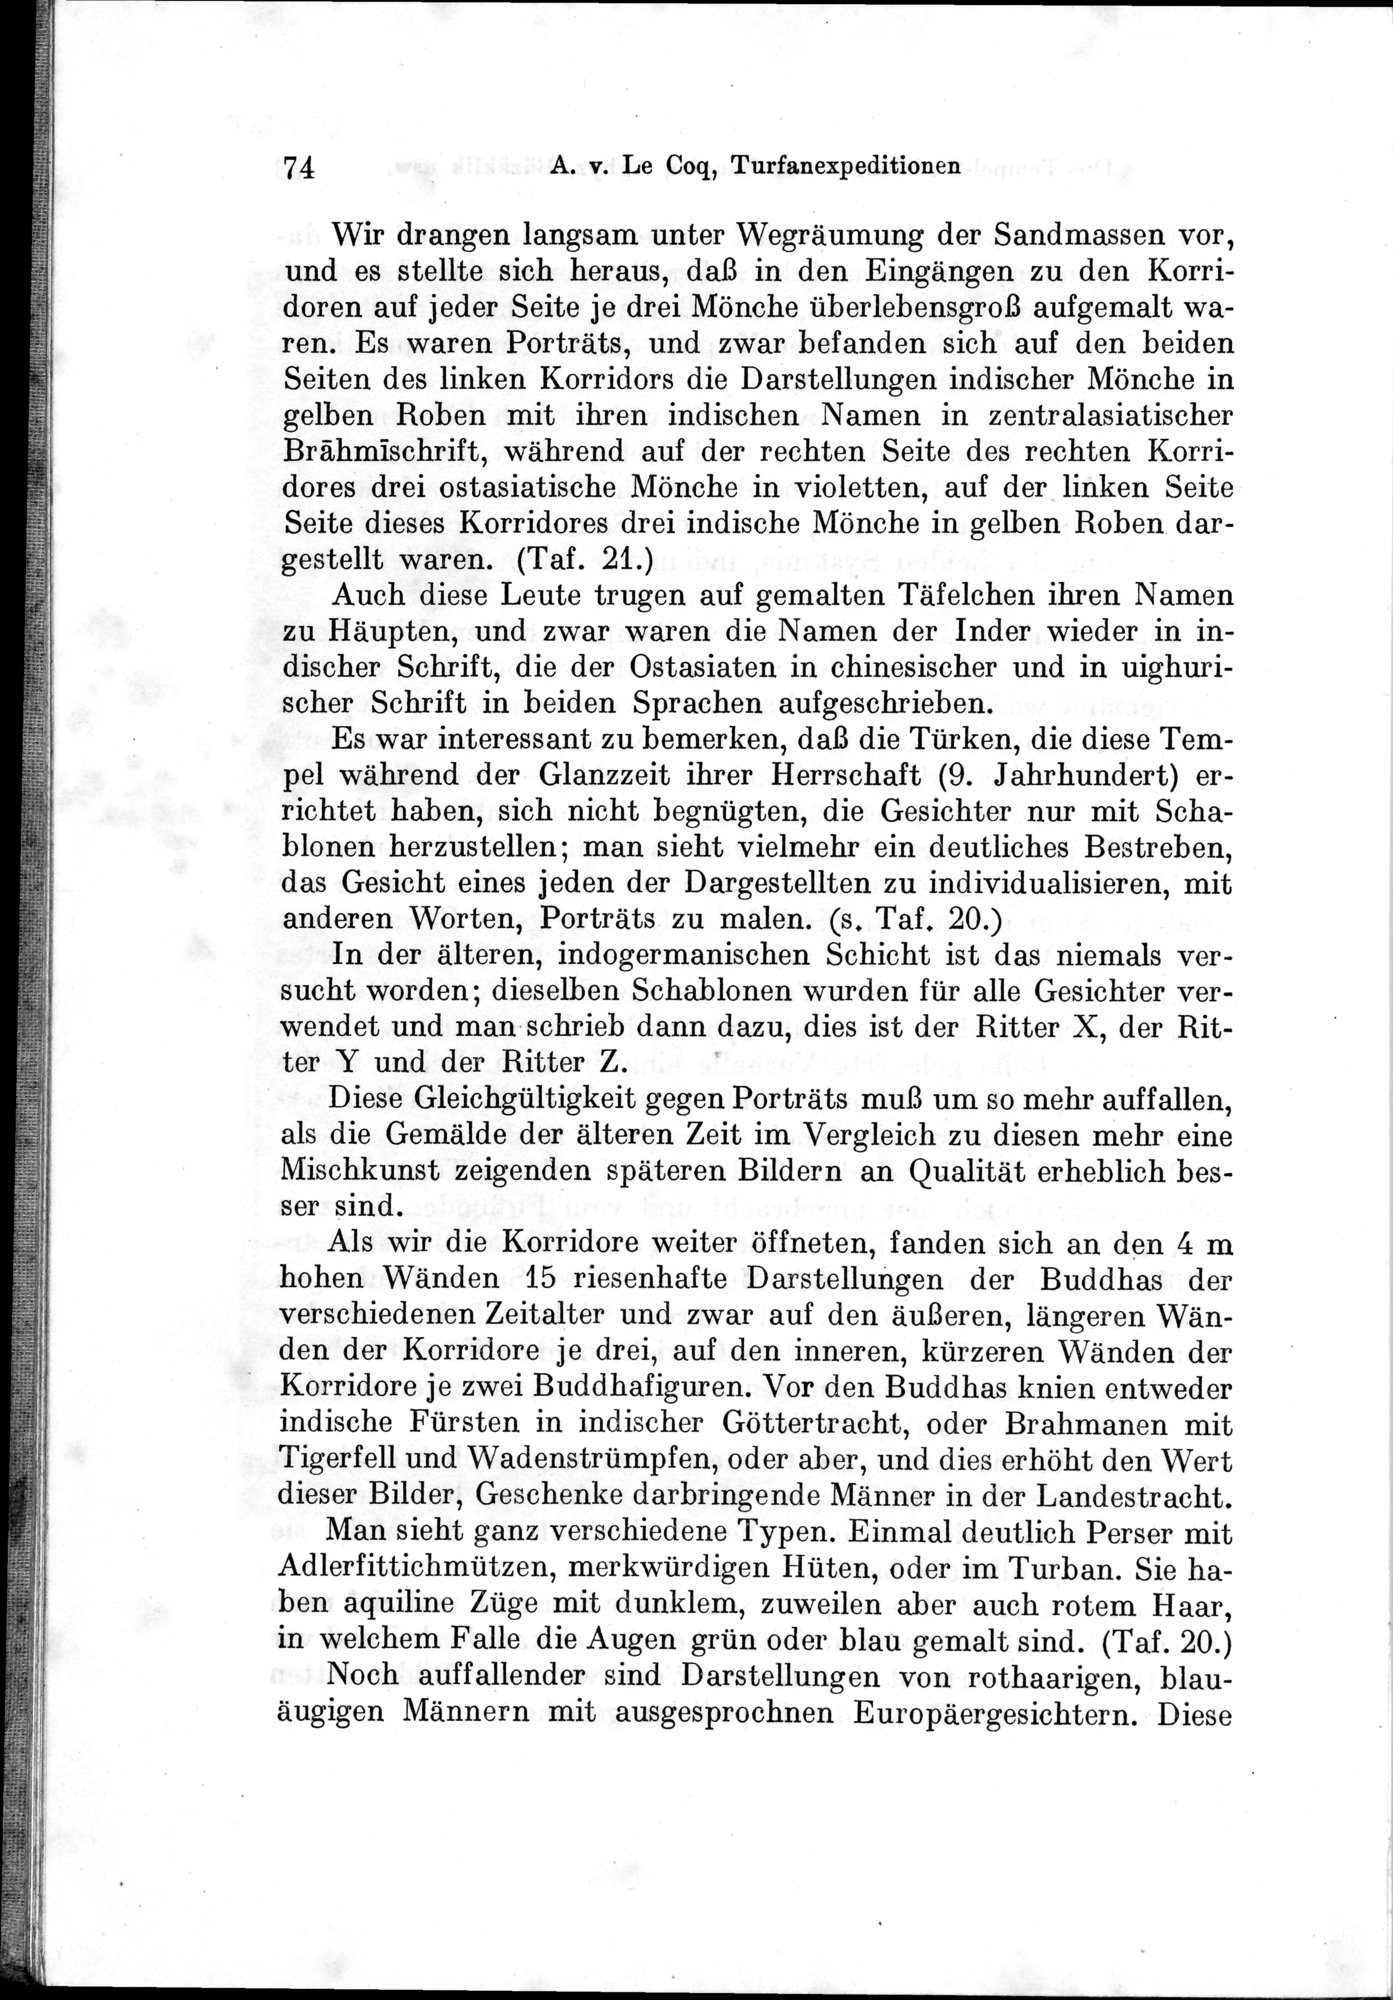 Auf Hellas Spuren in Ostturkistan : vol.1 / Page 112 (Grayscale High Resolution Image)